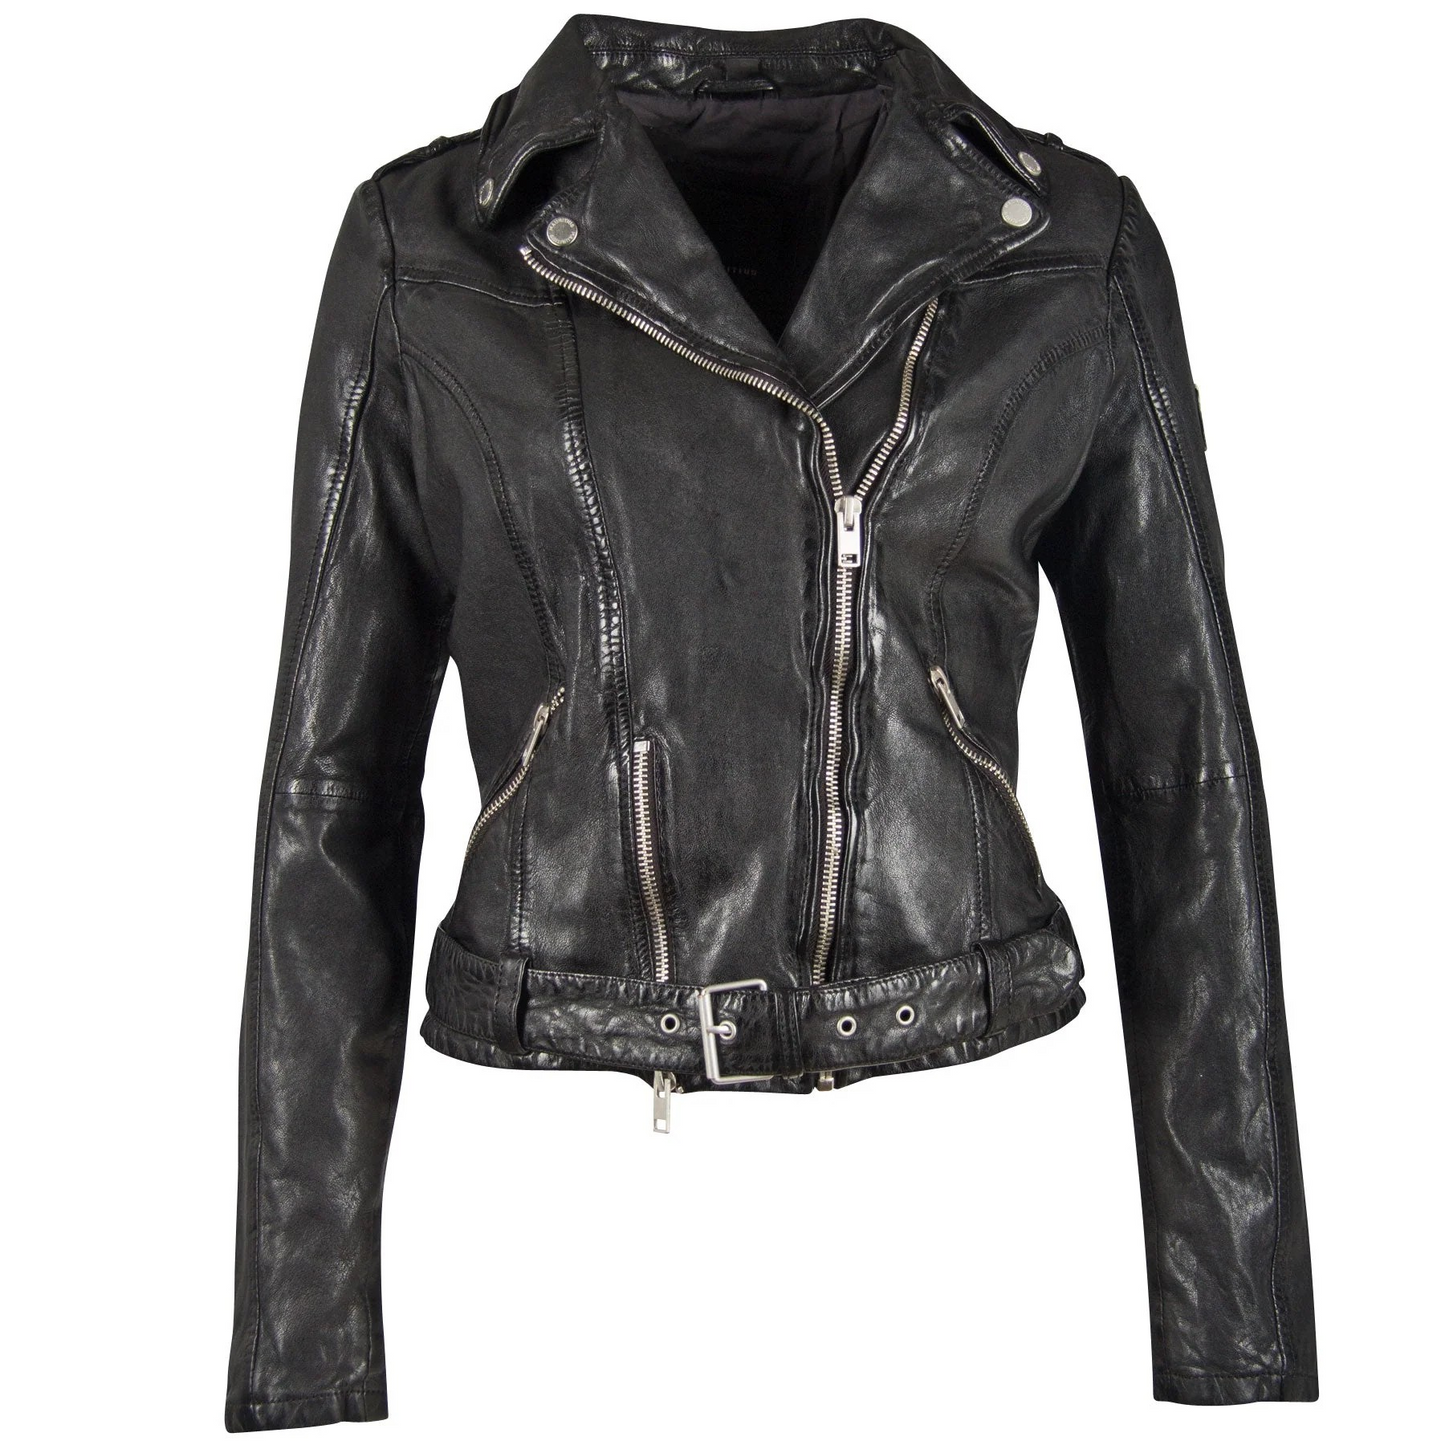 MAURITIUS Wild Leather Jacket